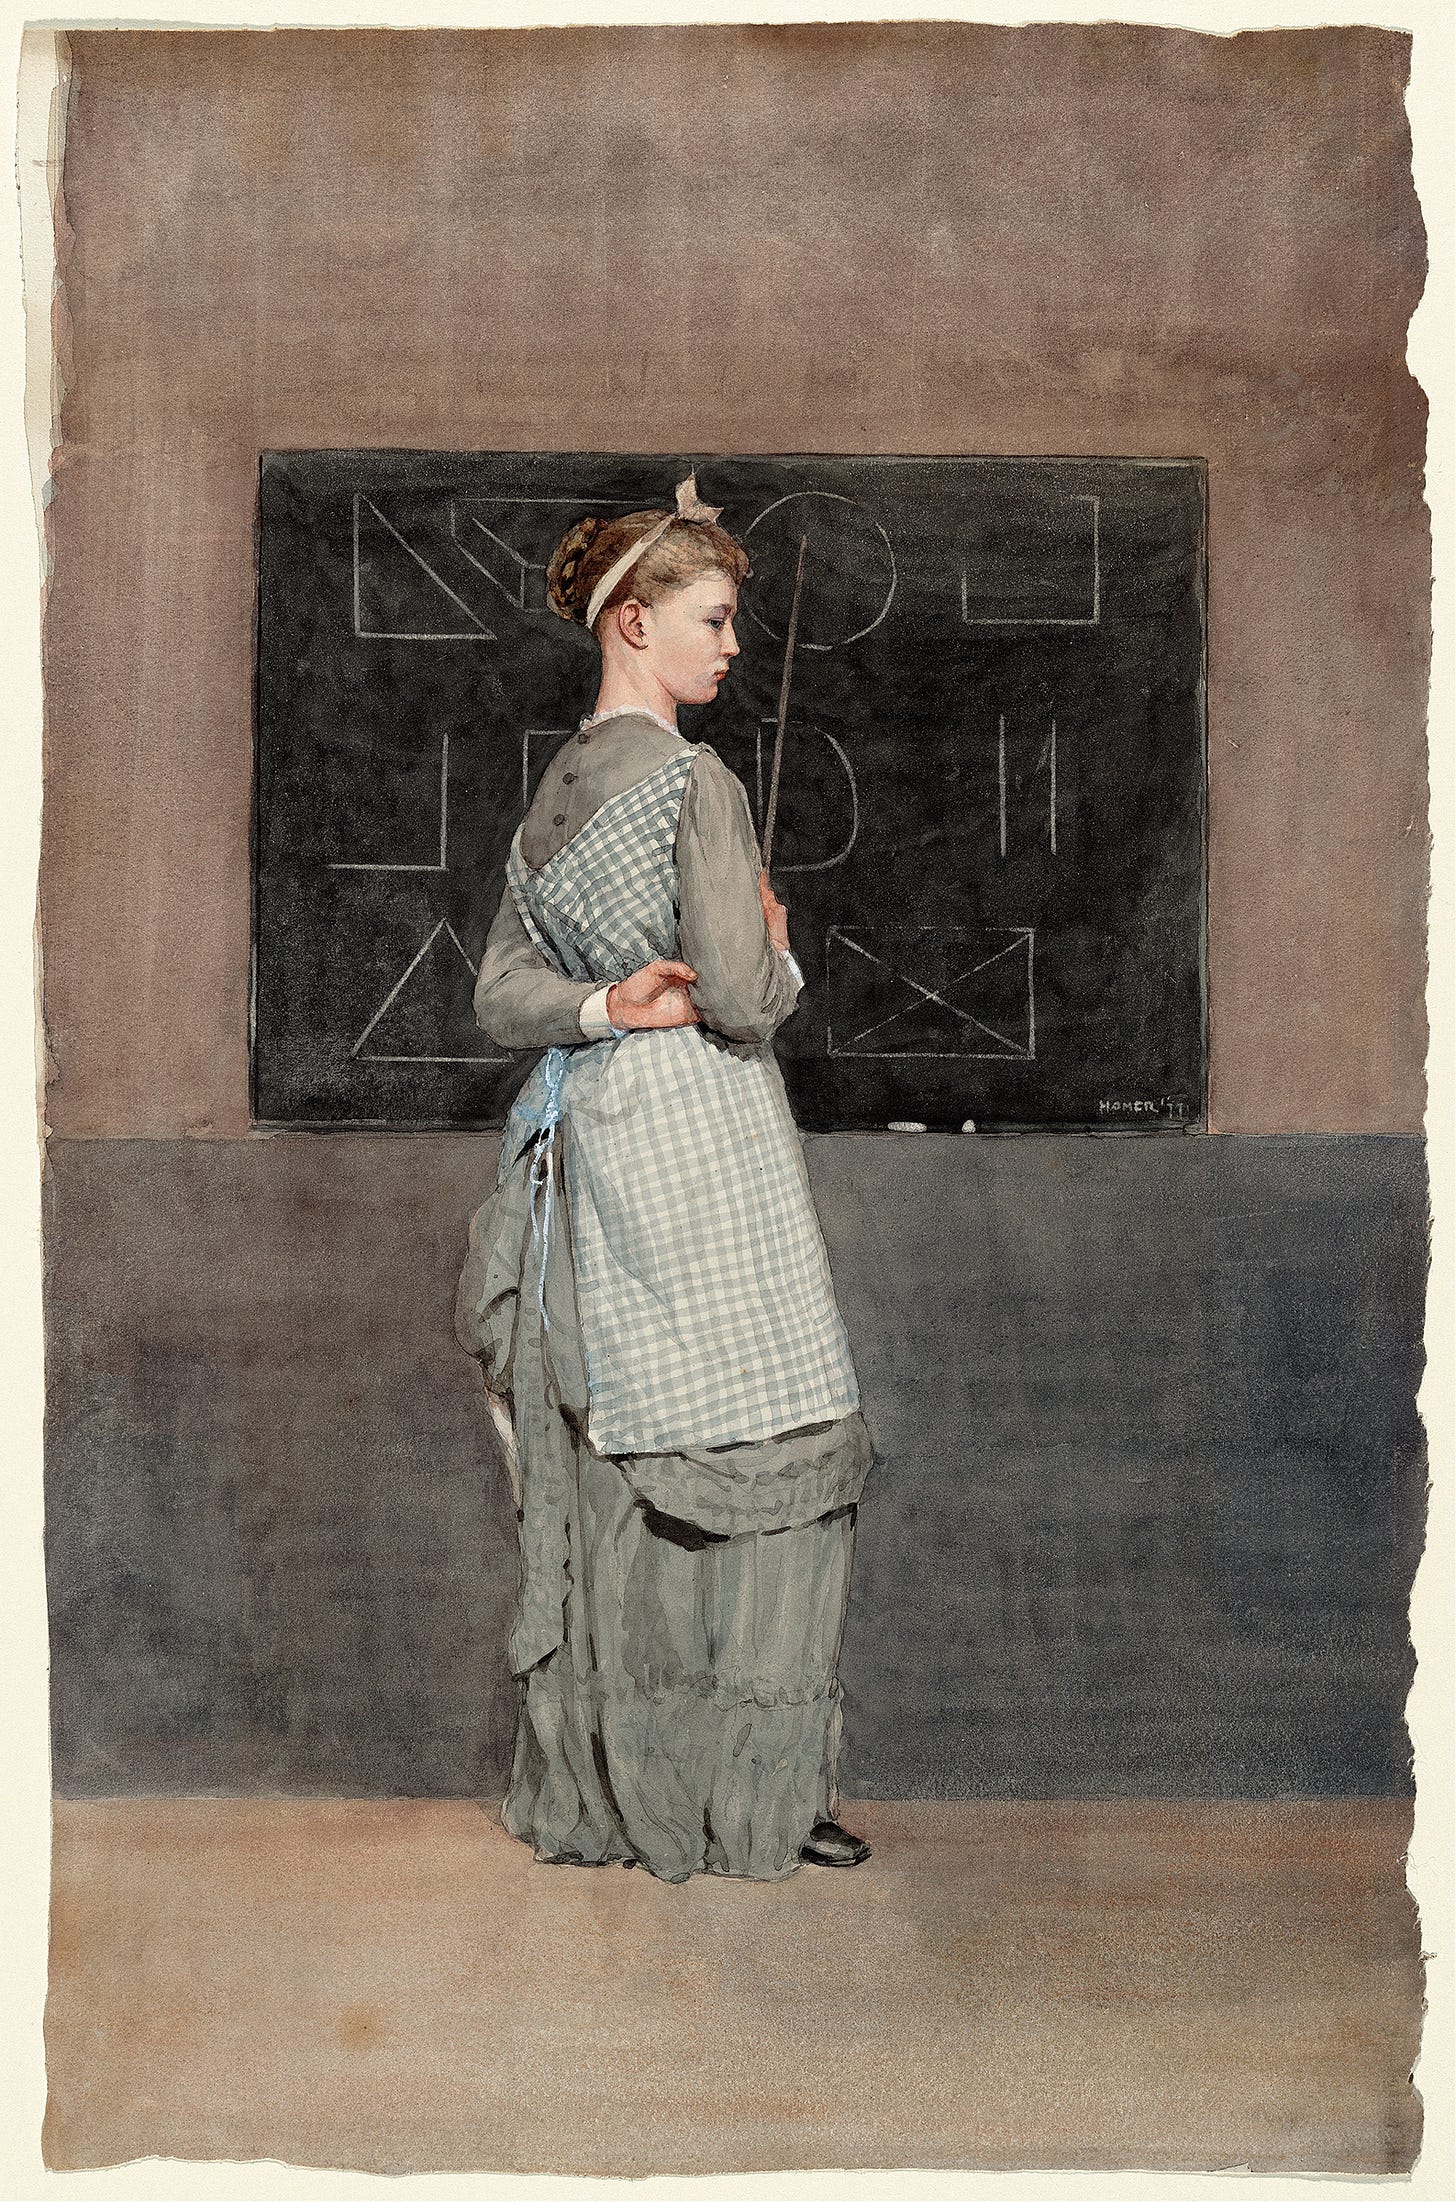 Blackboard (1877) by Winslow Homer (American, 1836-1910)